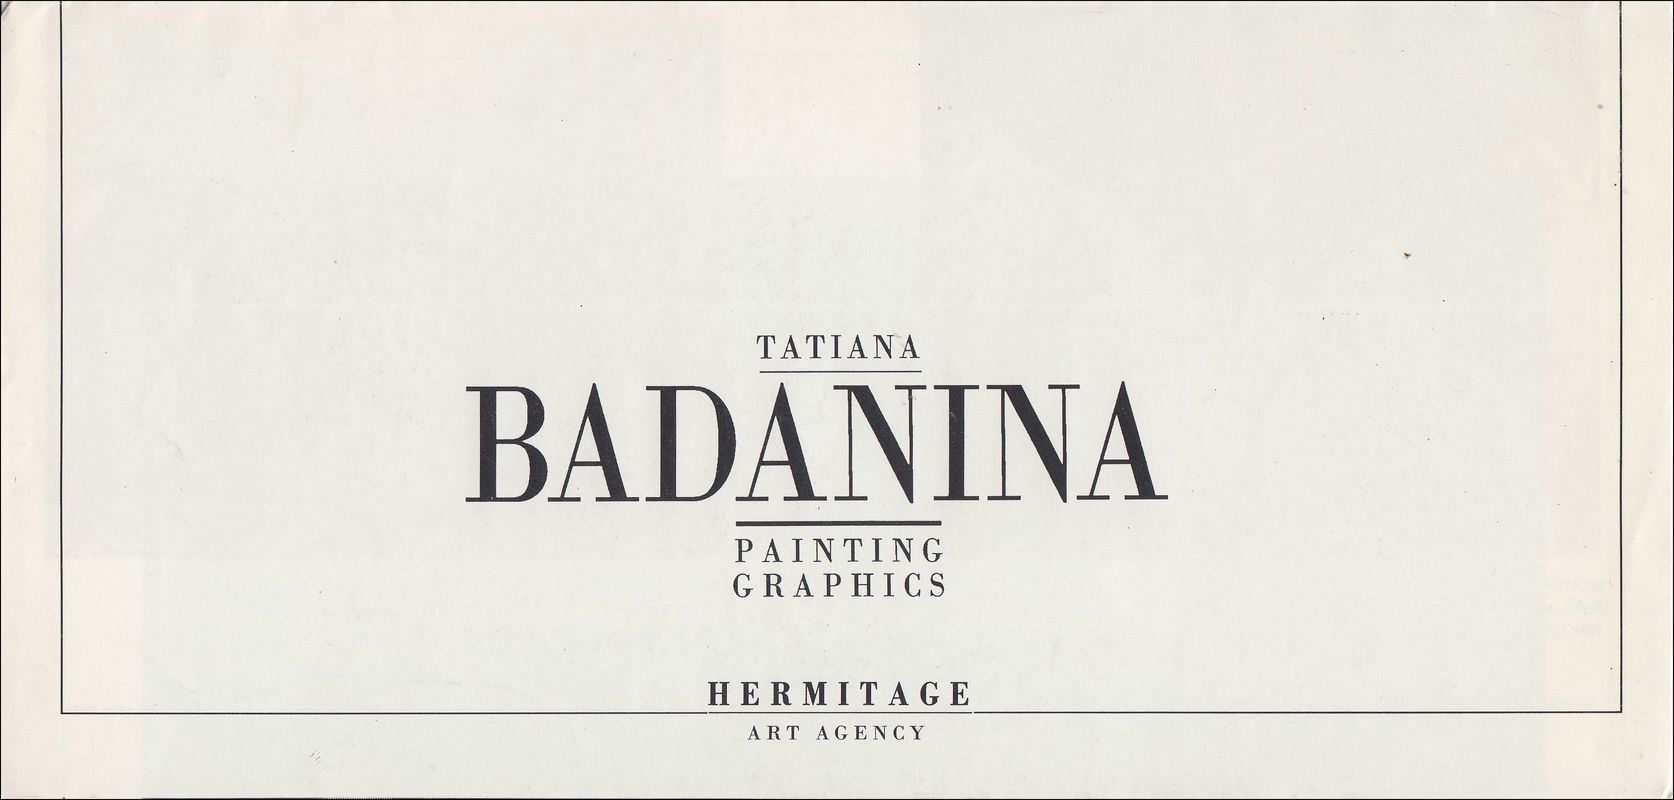 Tatiana Badanina. Painting. Graphics